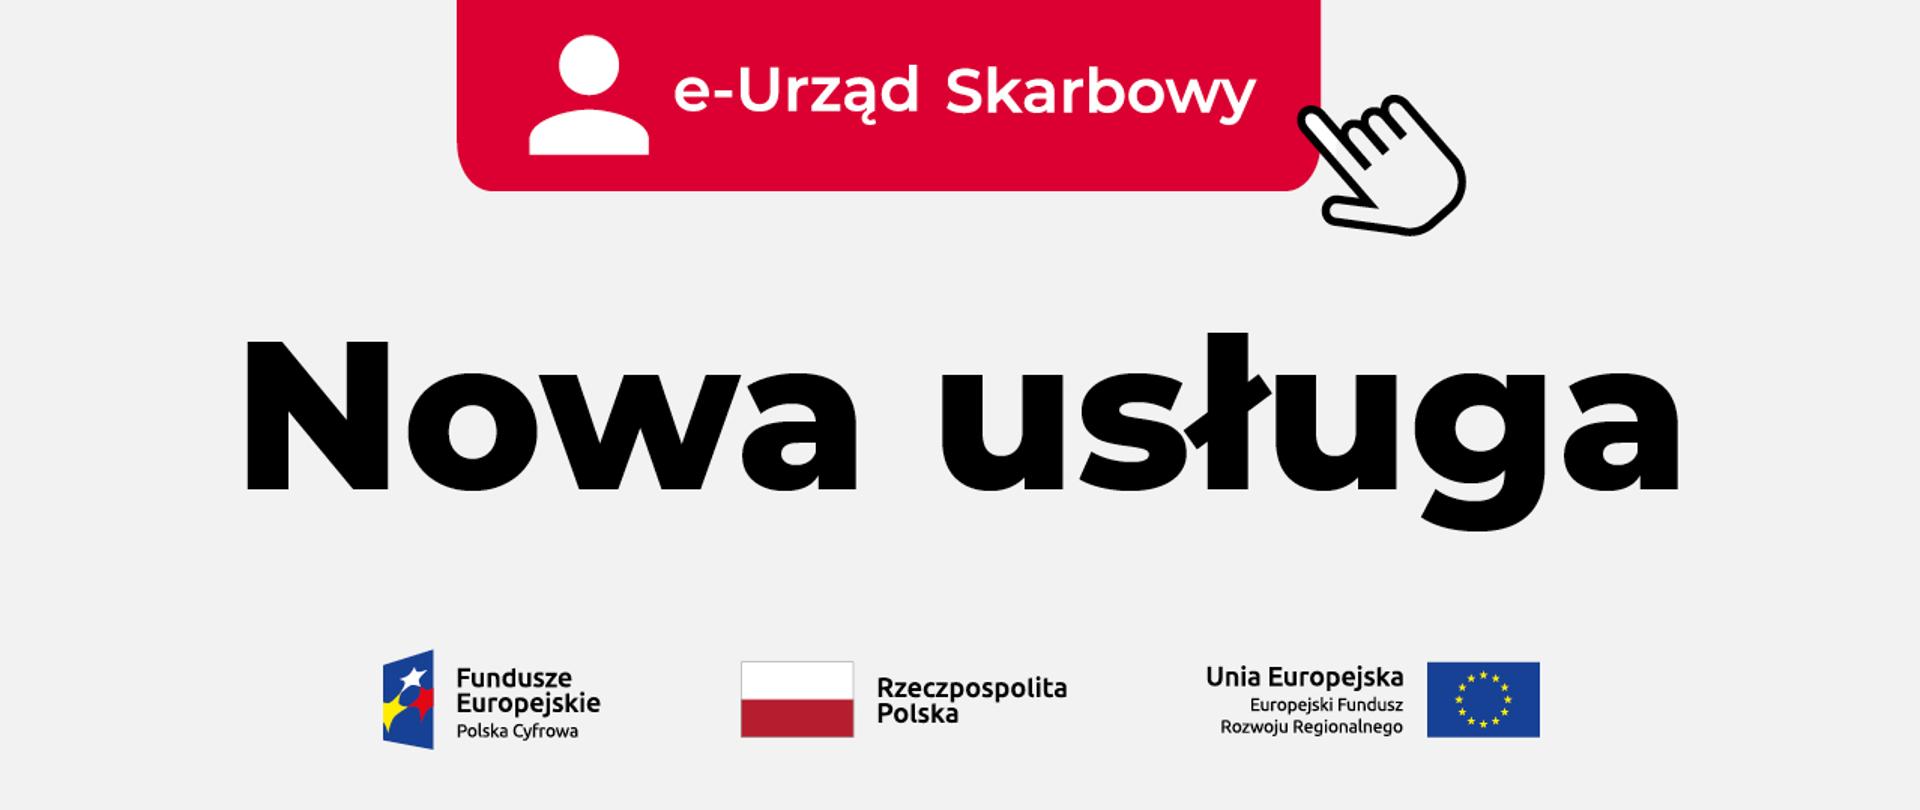 e-Urząd Skarbowy, nowa usługa, symbole funduszy UE.